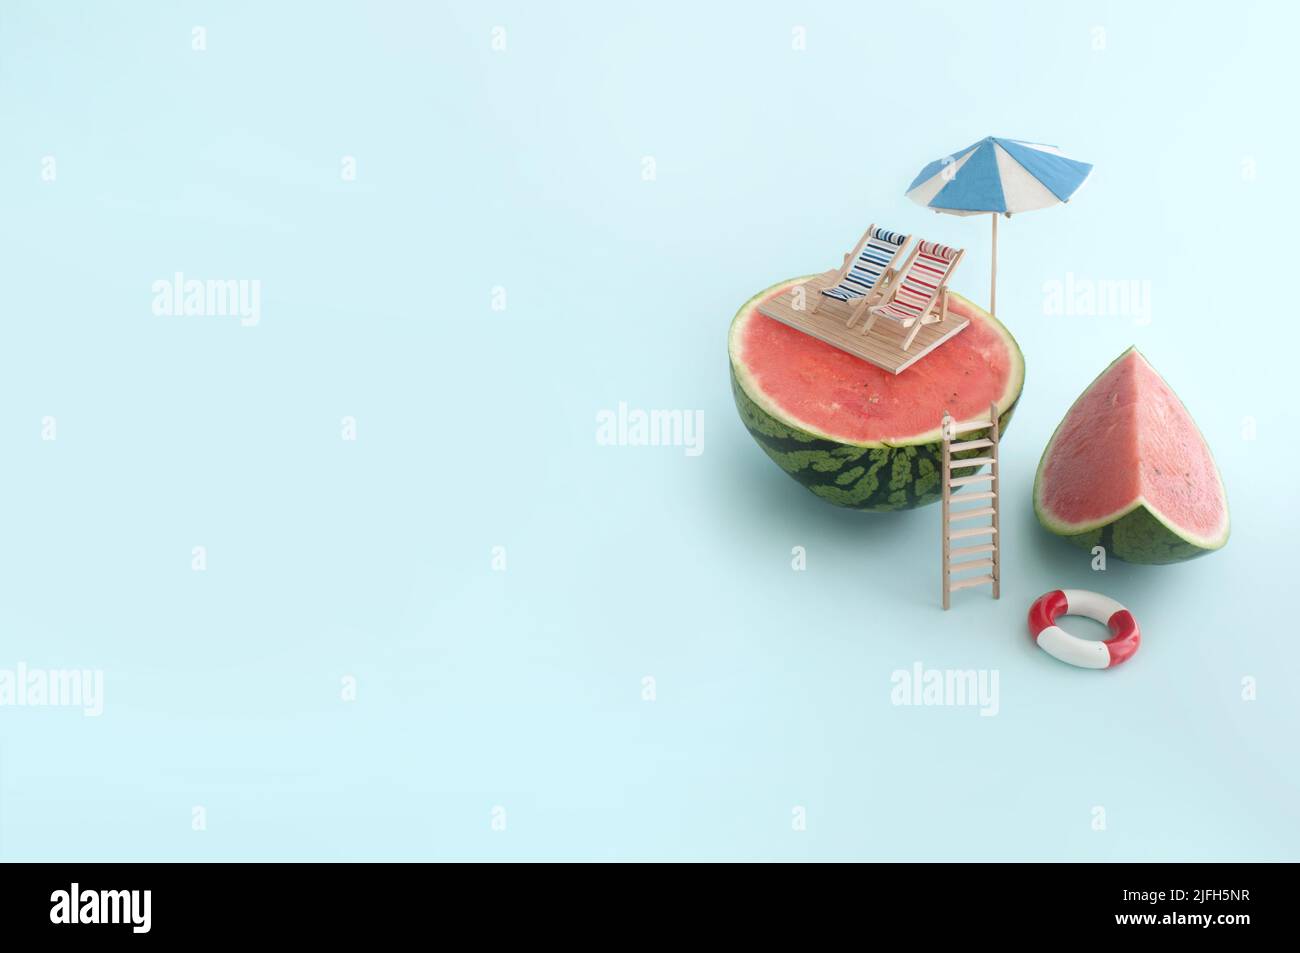 Concepto de vacaciones de verano; tumbonas y sombrilla en la parte superior de una sandía, con piscina abajo Foto de stock